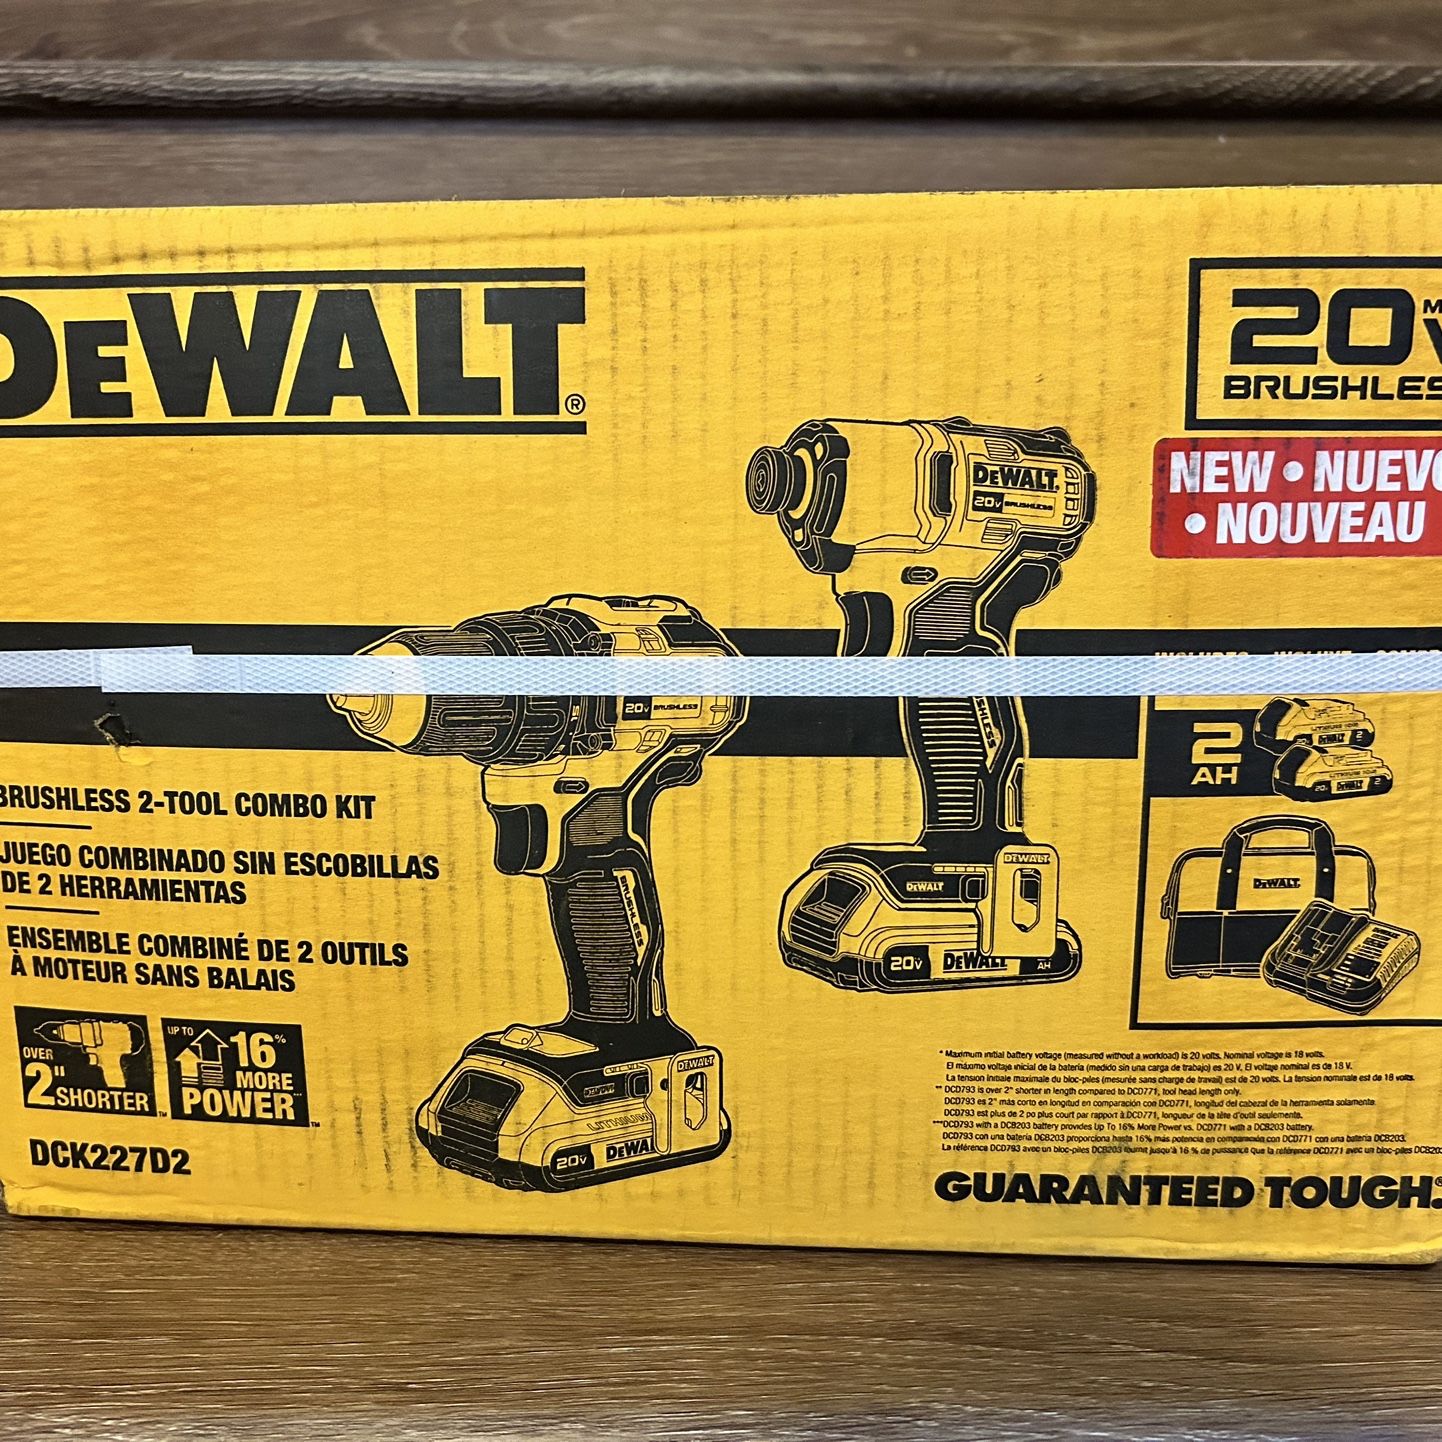 NEW Dewalt 20v MAX 2 Tool Combo Kit Drill Driver